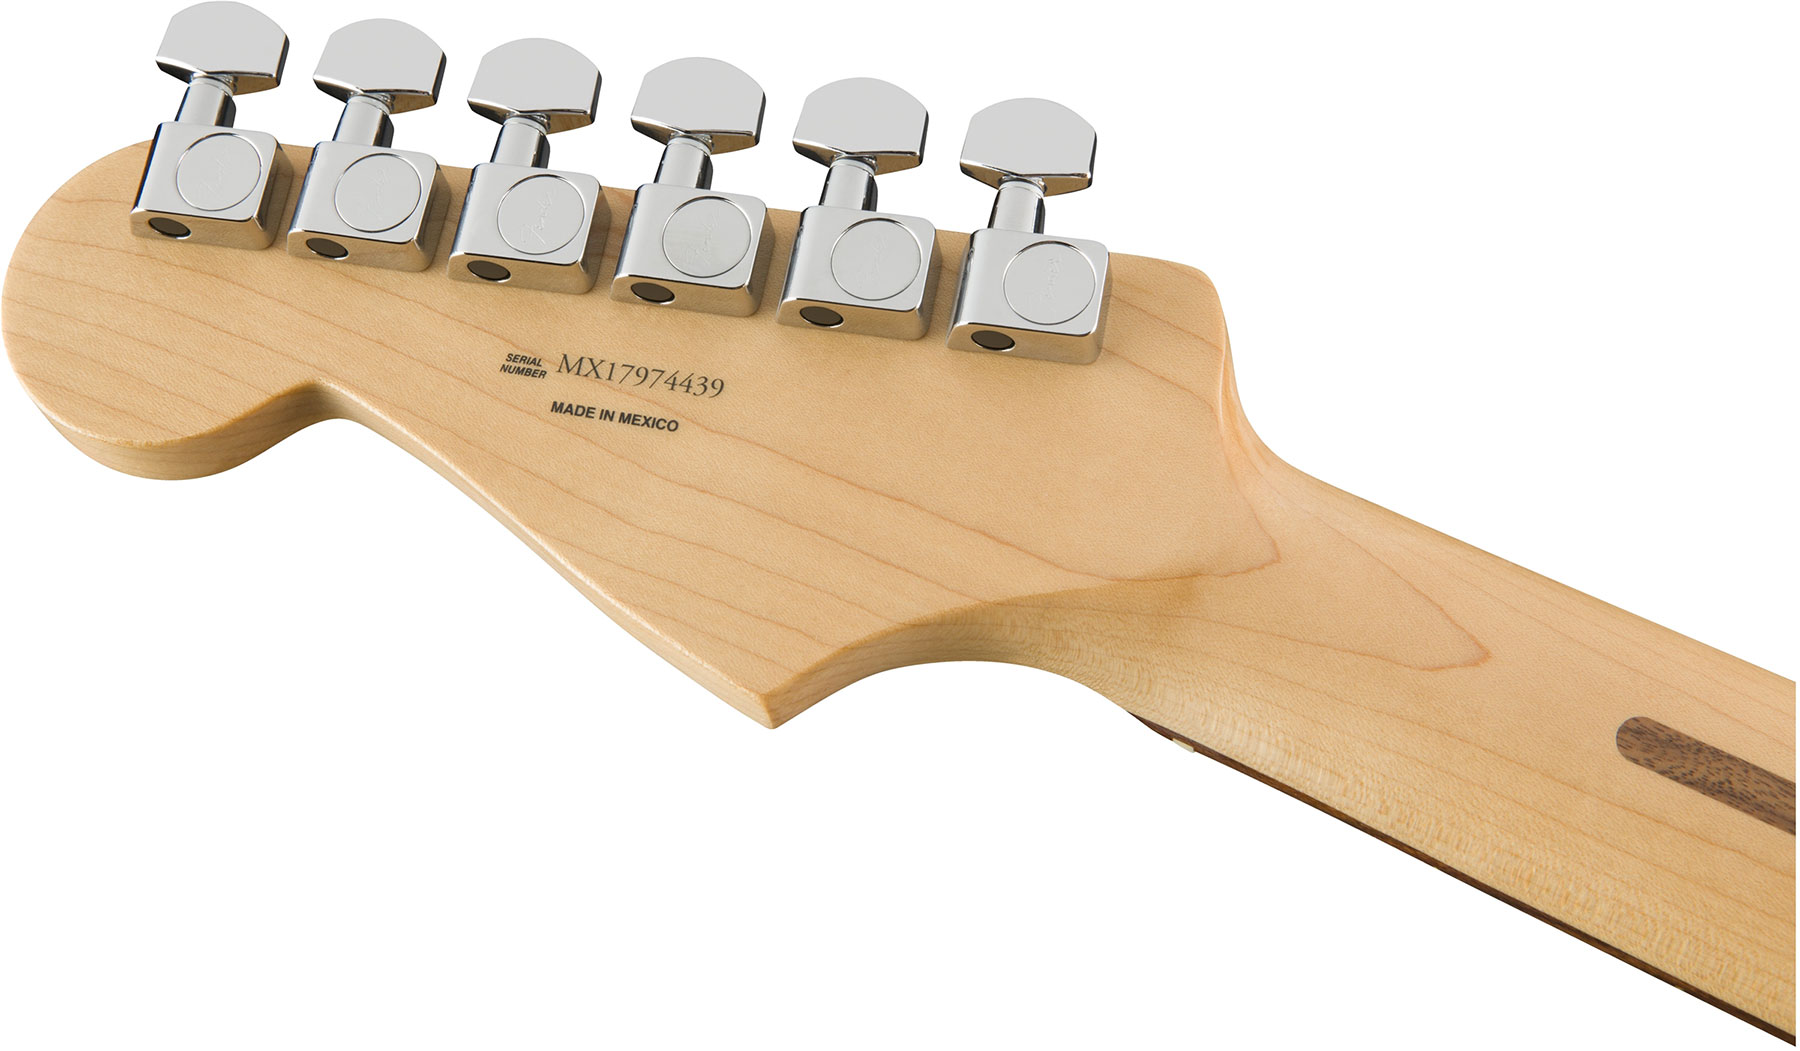 Fender Strat Player Mex Hss Pf - 3-color Sunburst - Str shape electric guitar - Variation 3